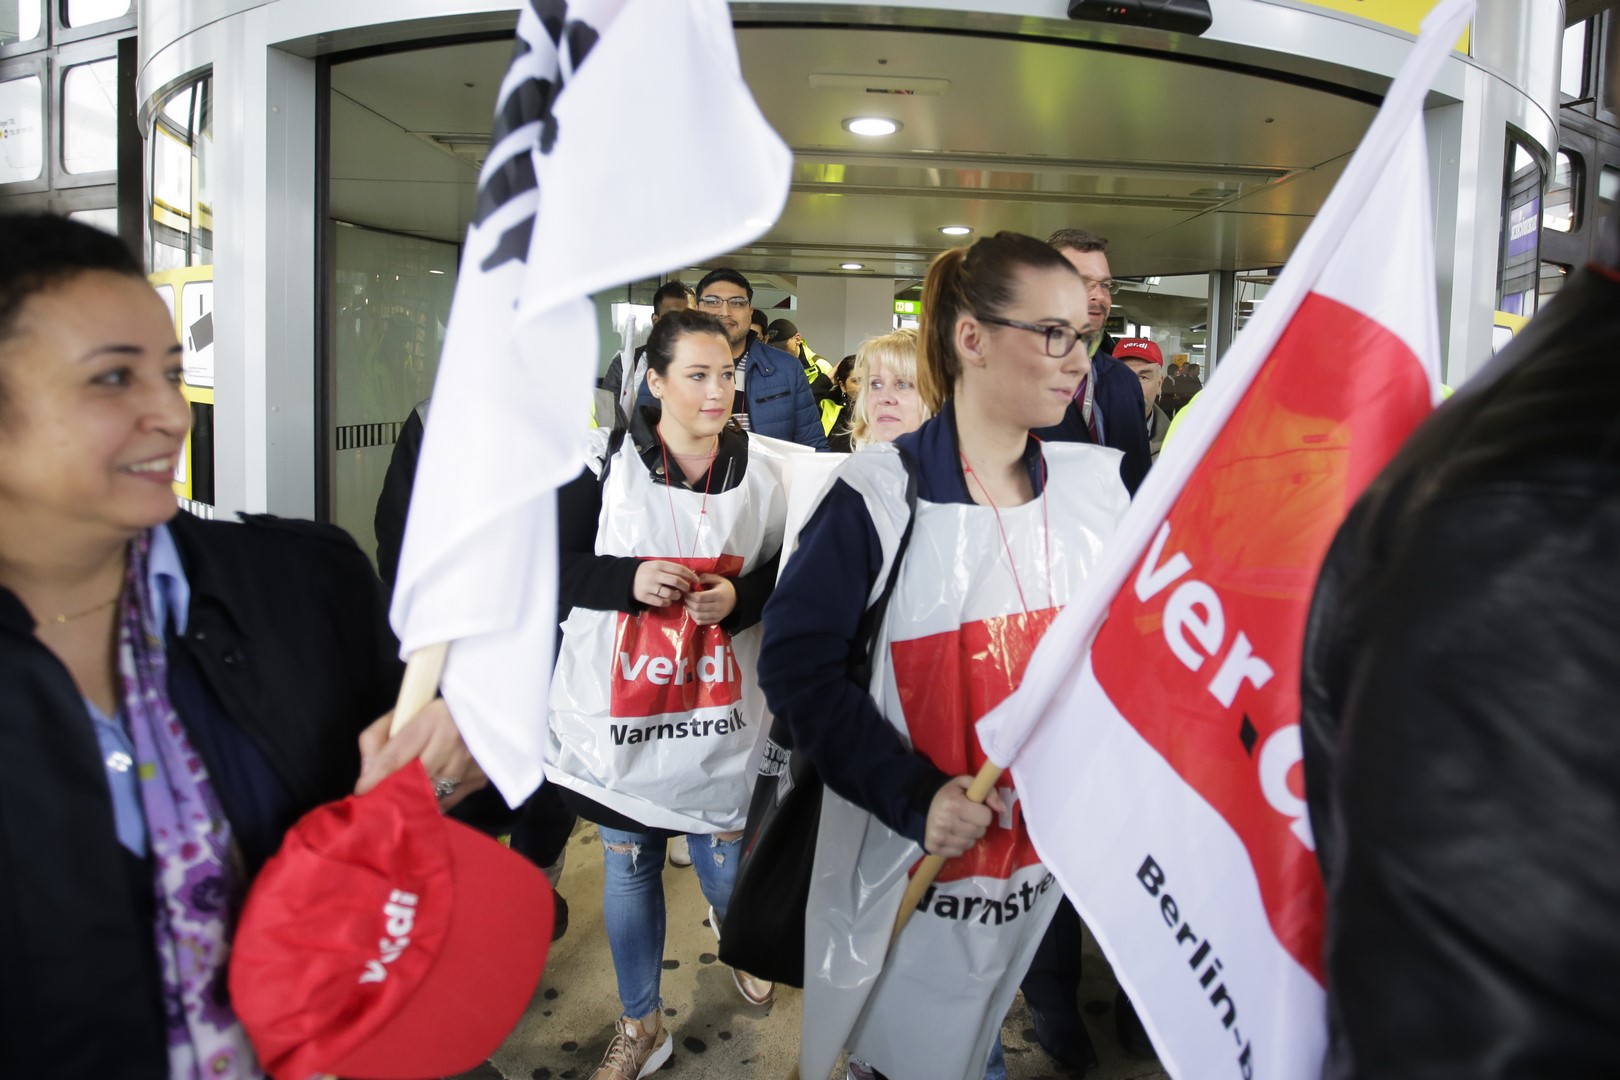 Empleados de aeropuertos de Berlín, Alemania se van a huelga; exigen aumento de salario. (AP)